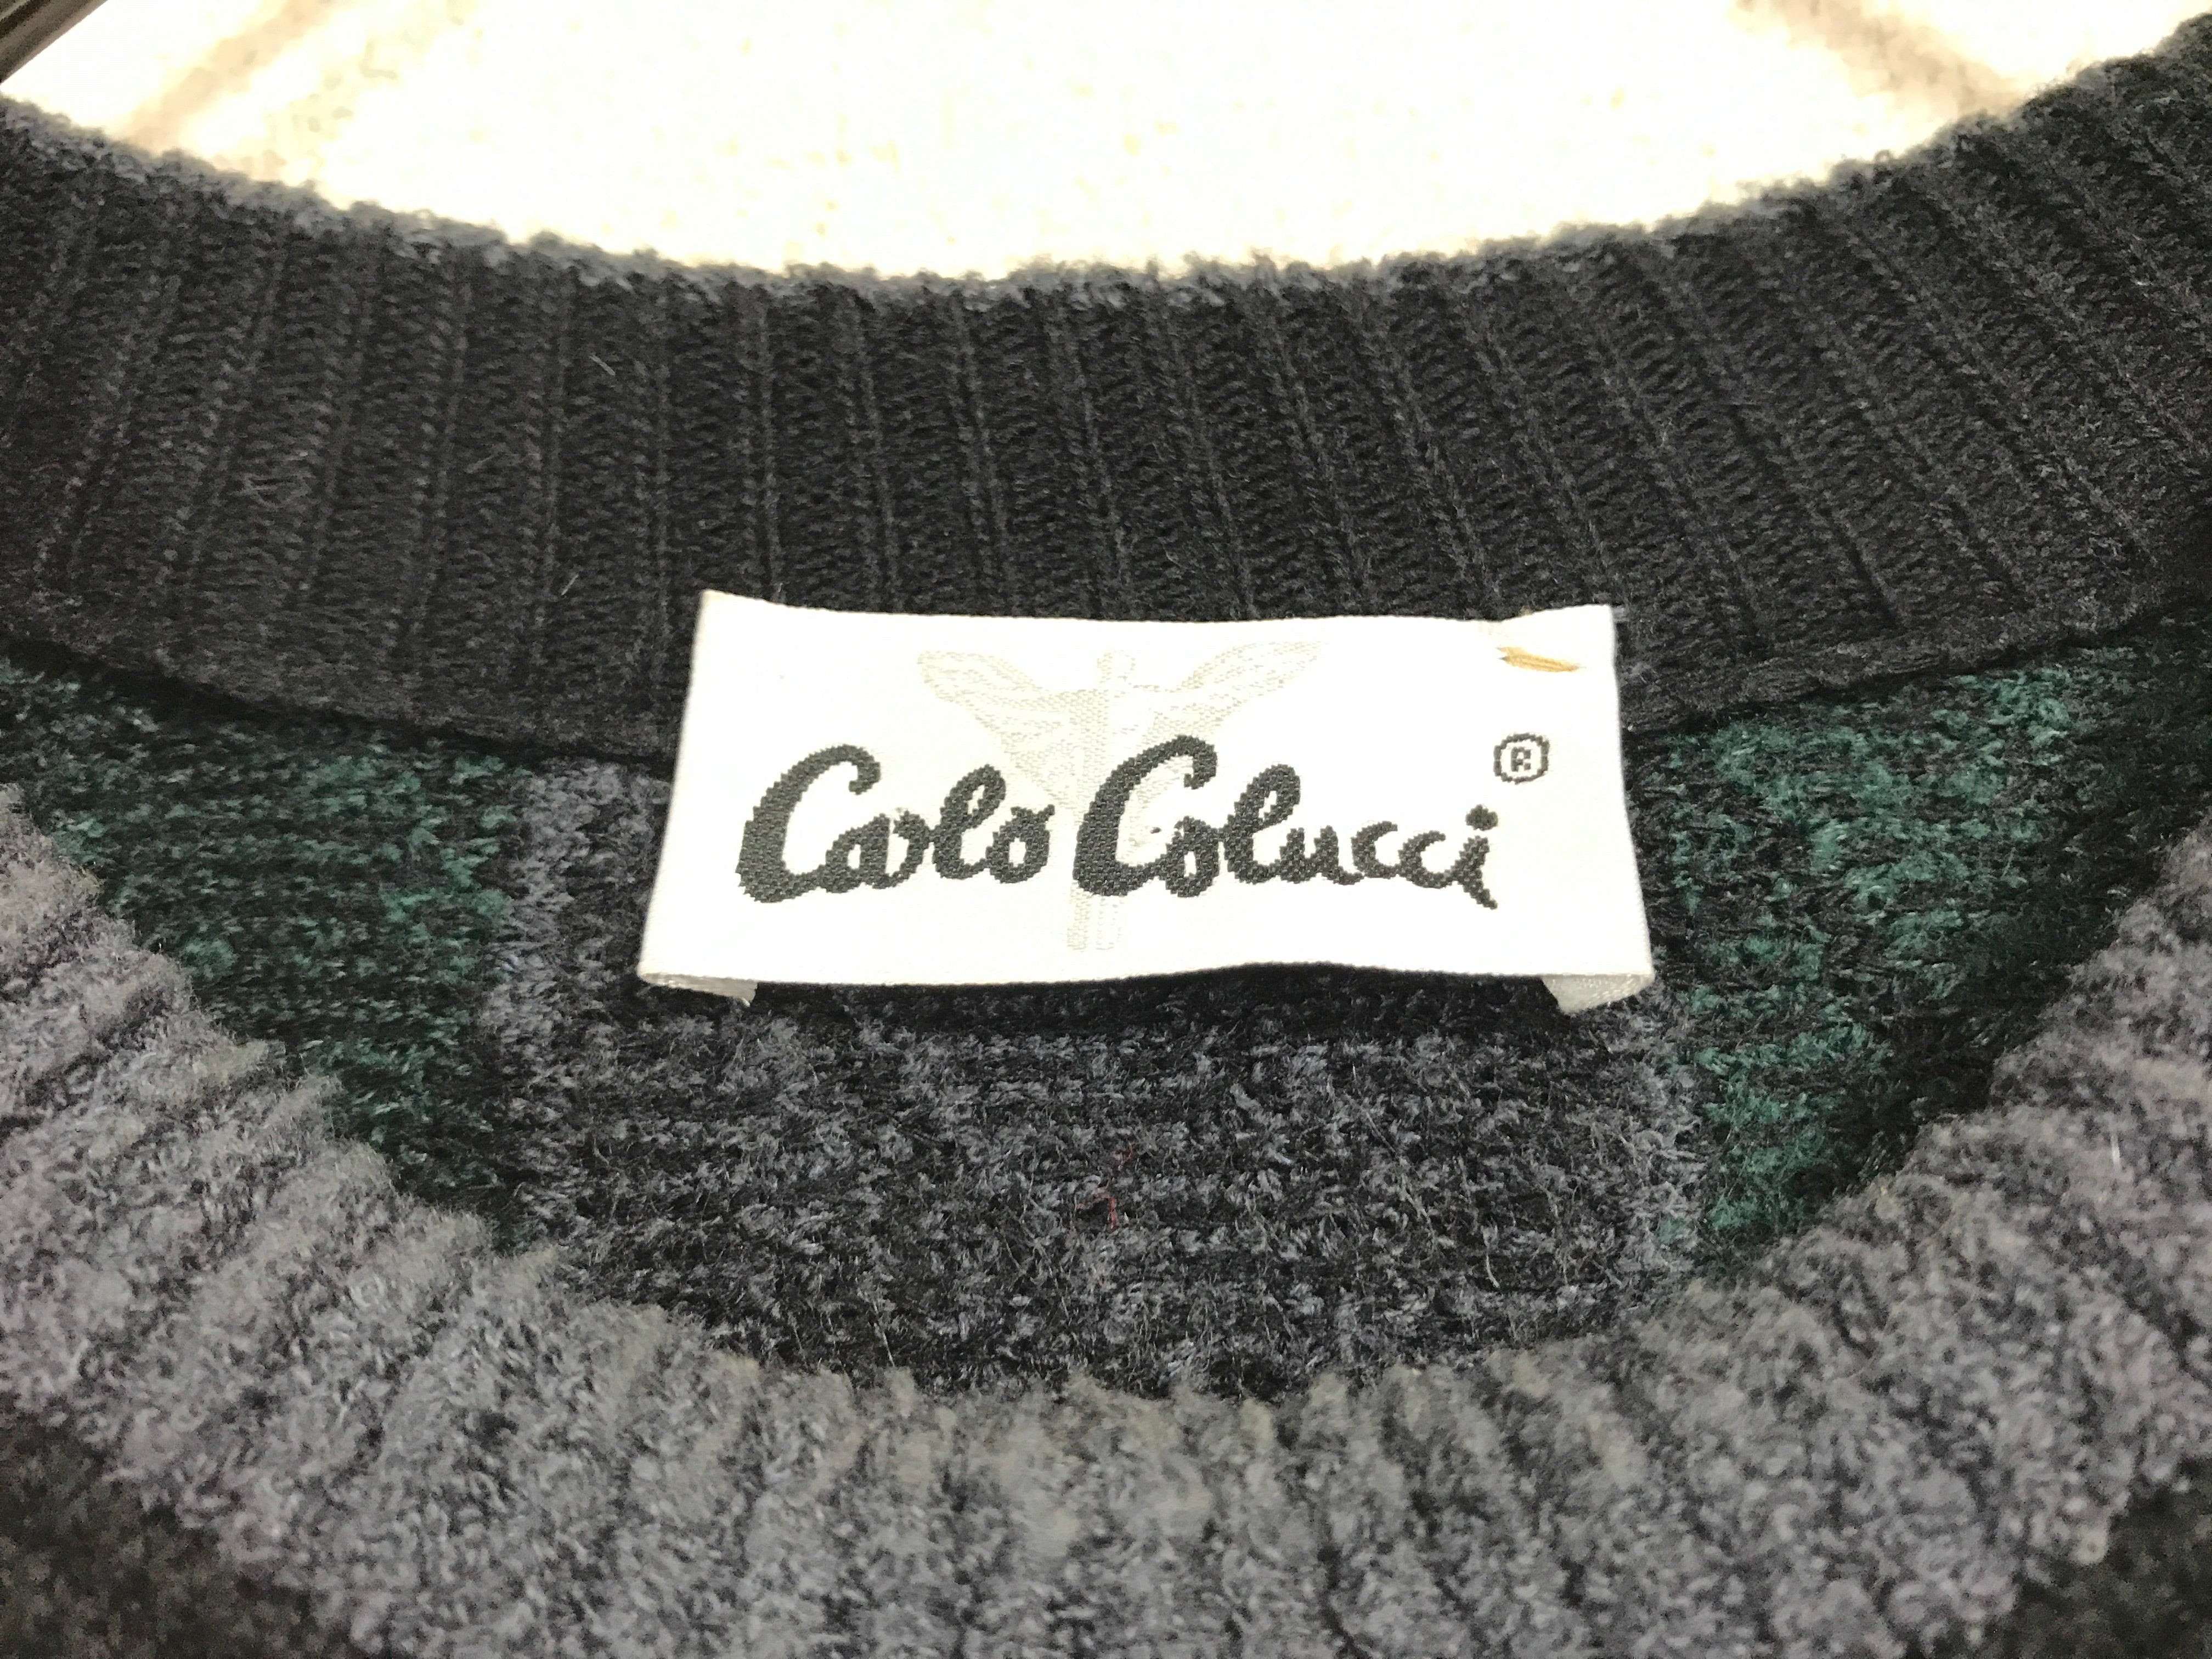 "Carlo Colucci" wool knit sweater